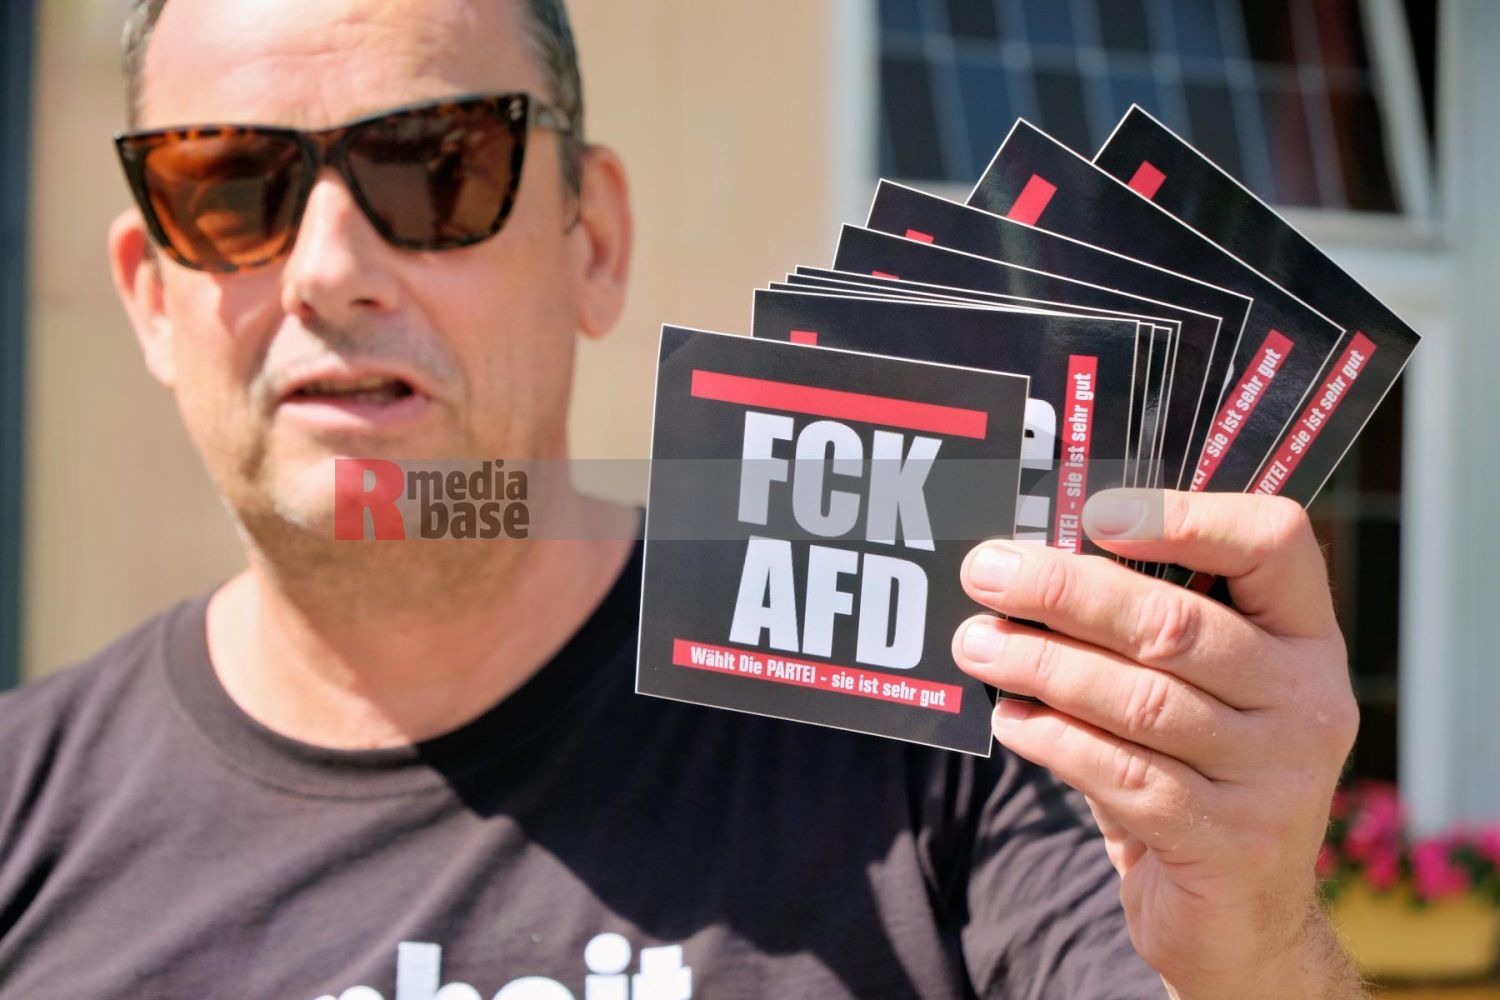 Protest gegen den AfD Parteitag in Essen <i>Bild Bitzel/R-mediabase</i> <br><a href=/confor2/?bld=82777&pst=82745&aid=70&dc=1011&i1=Bitzel/R-mediabase><strong>Downloadanfrage</strong></a>  